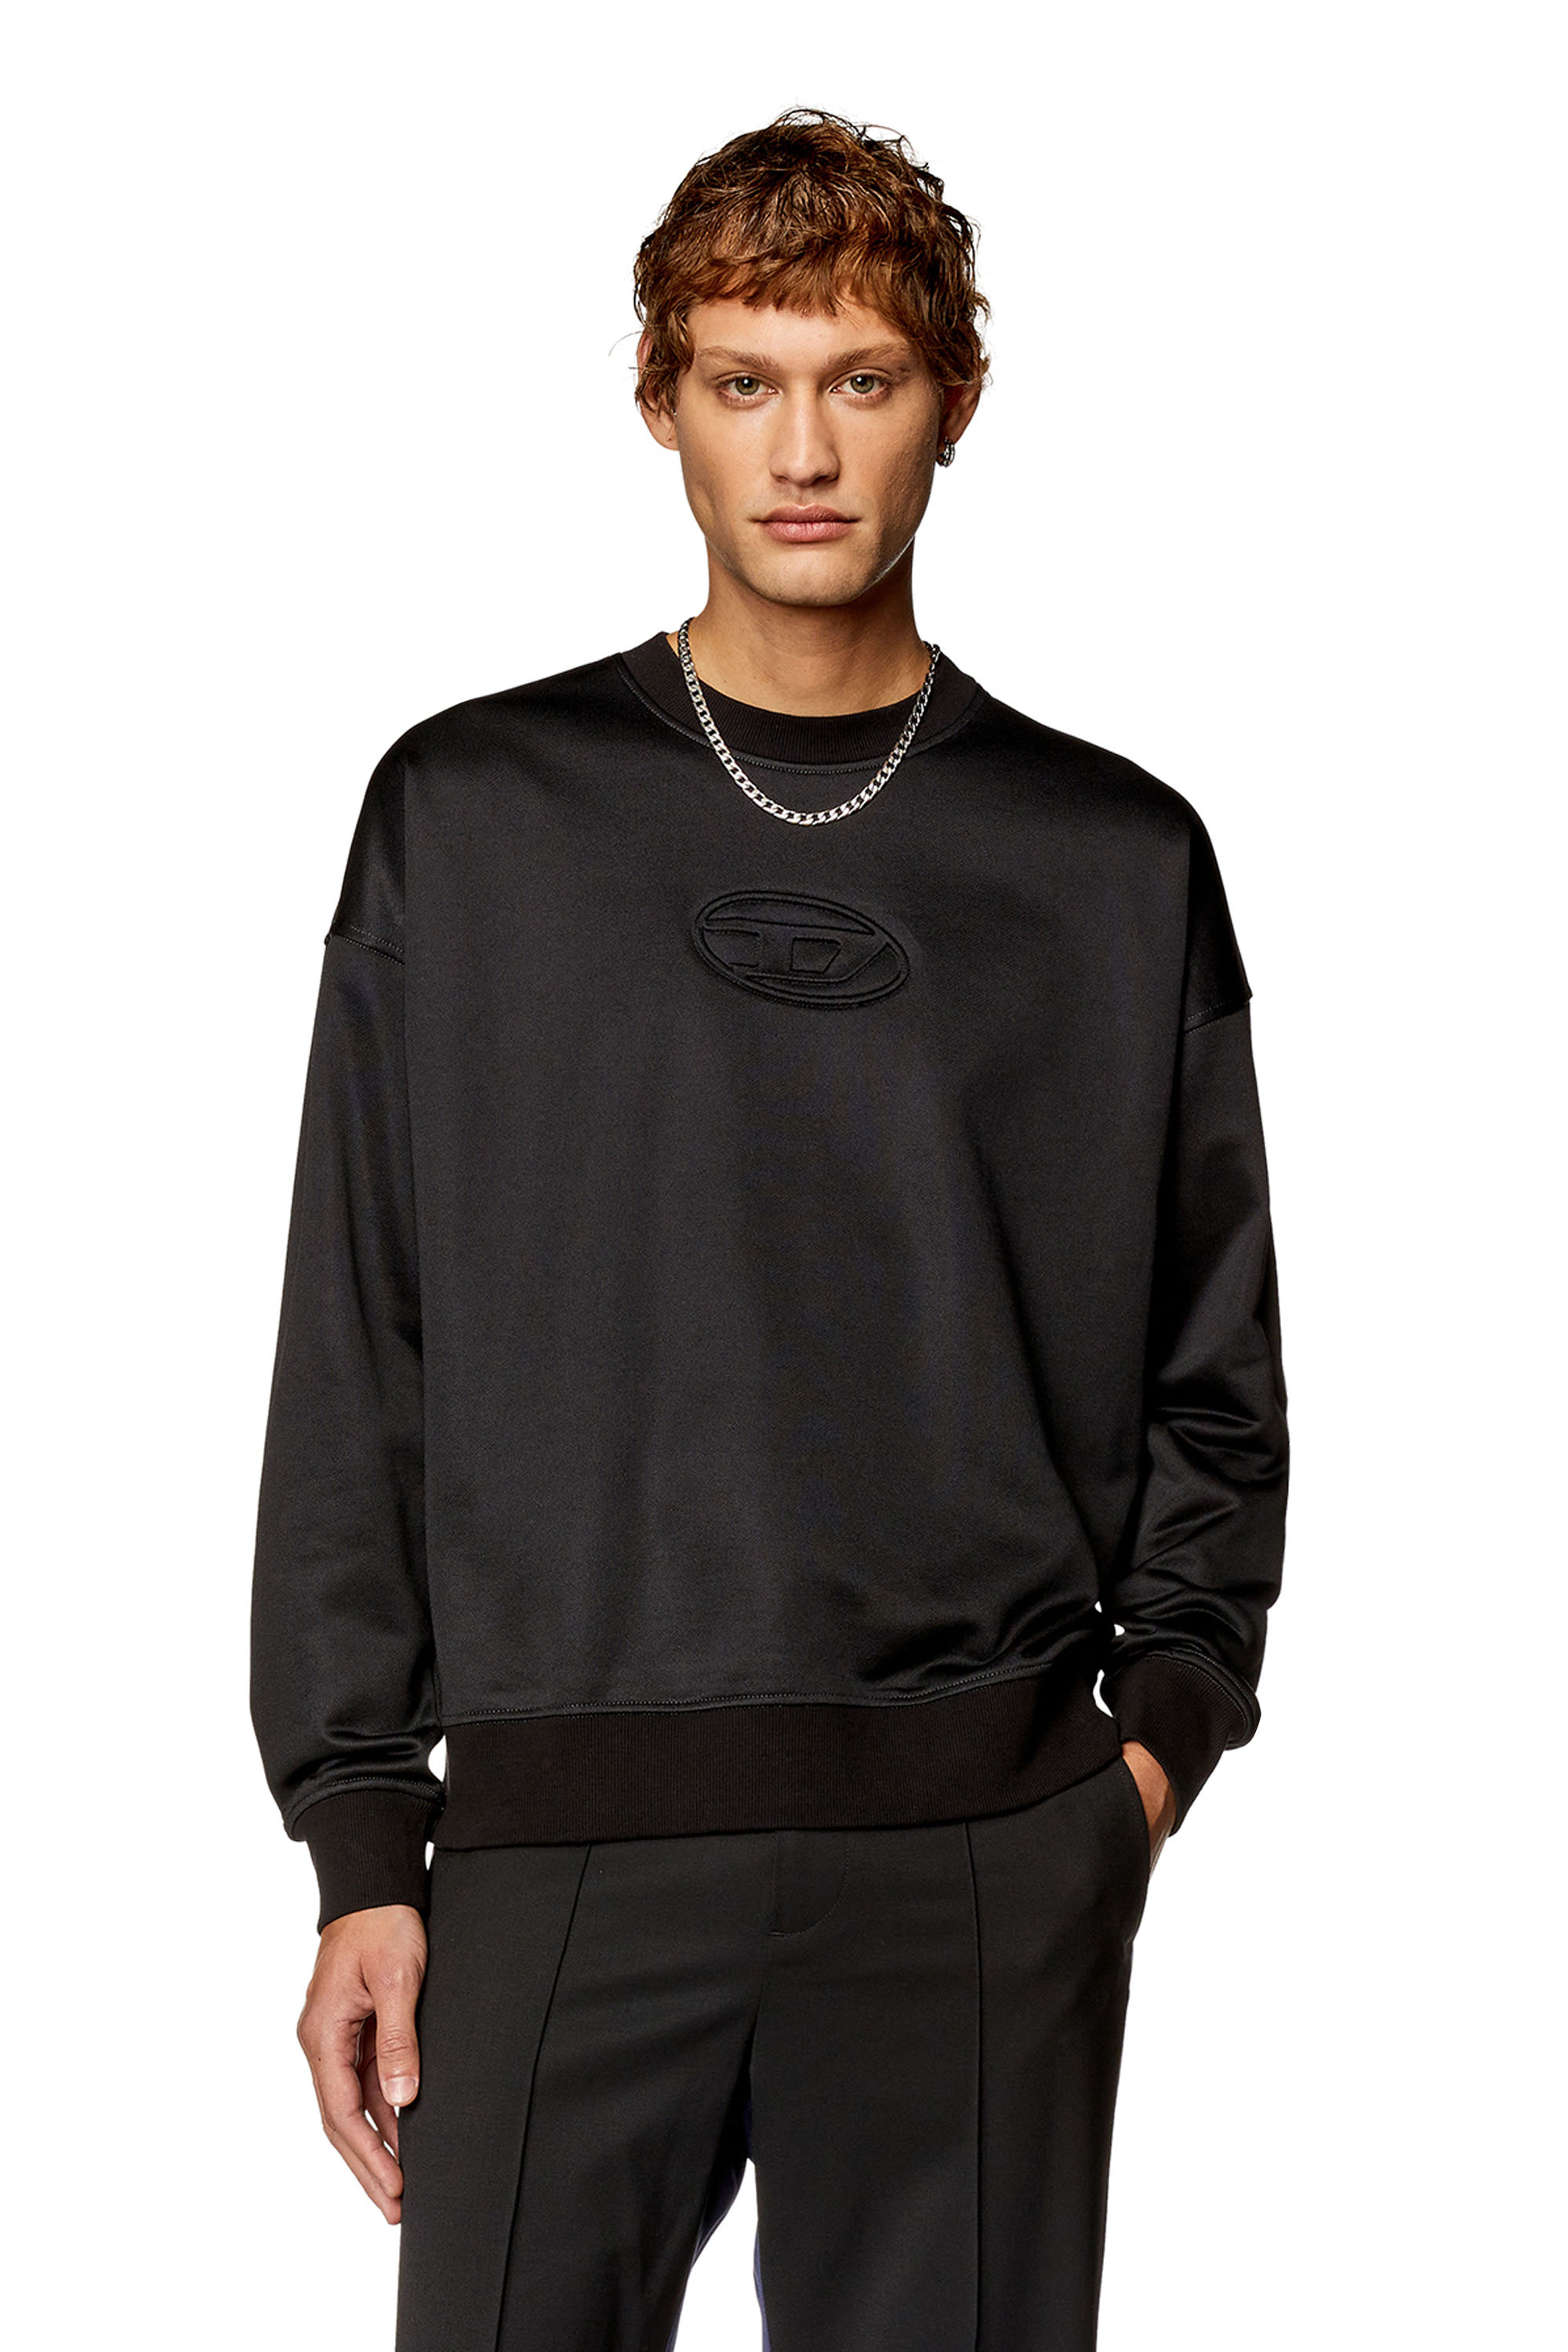 Diesel - Sweat-shirt avec logo Oval D embossé - Pull Cotton - Homme - Noir